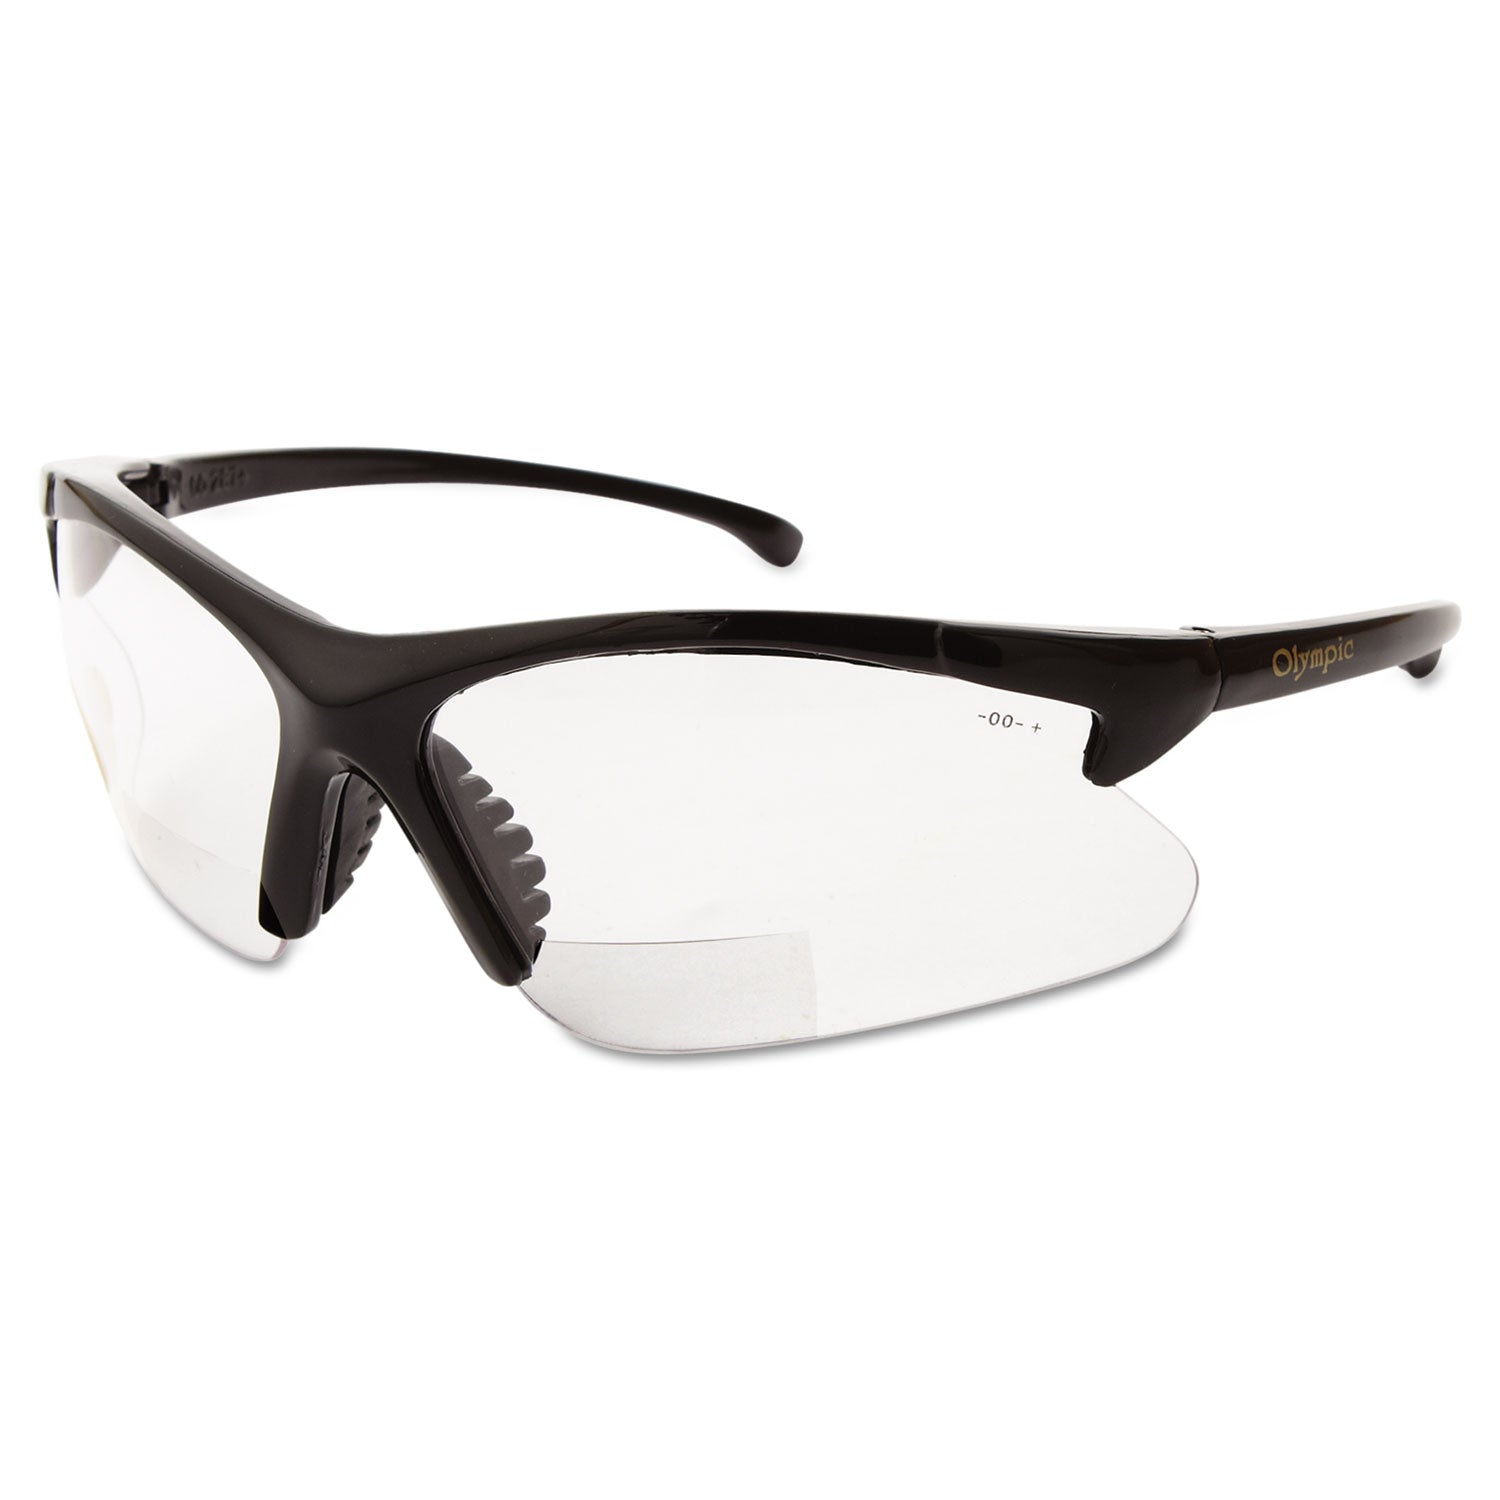 v60-30-06-reader-safety-eyewear-black-frame-clear-lens_smw19878 - 2